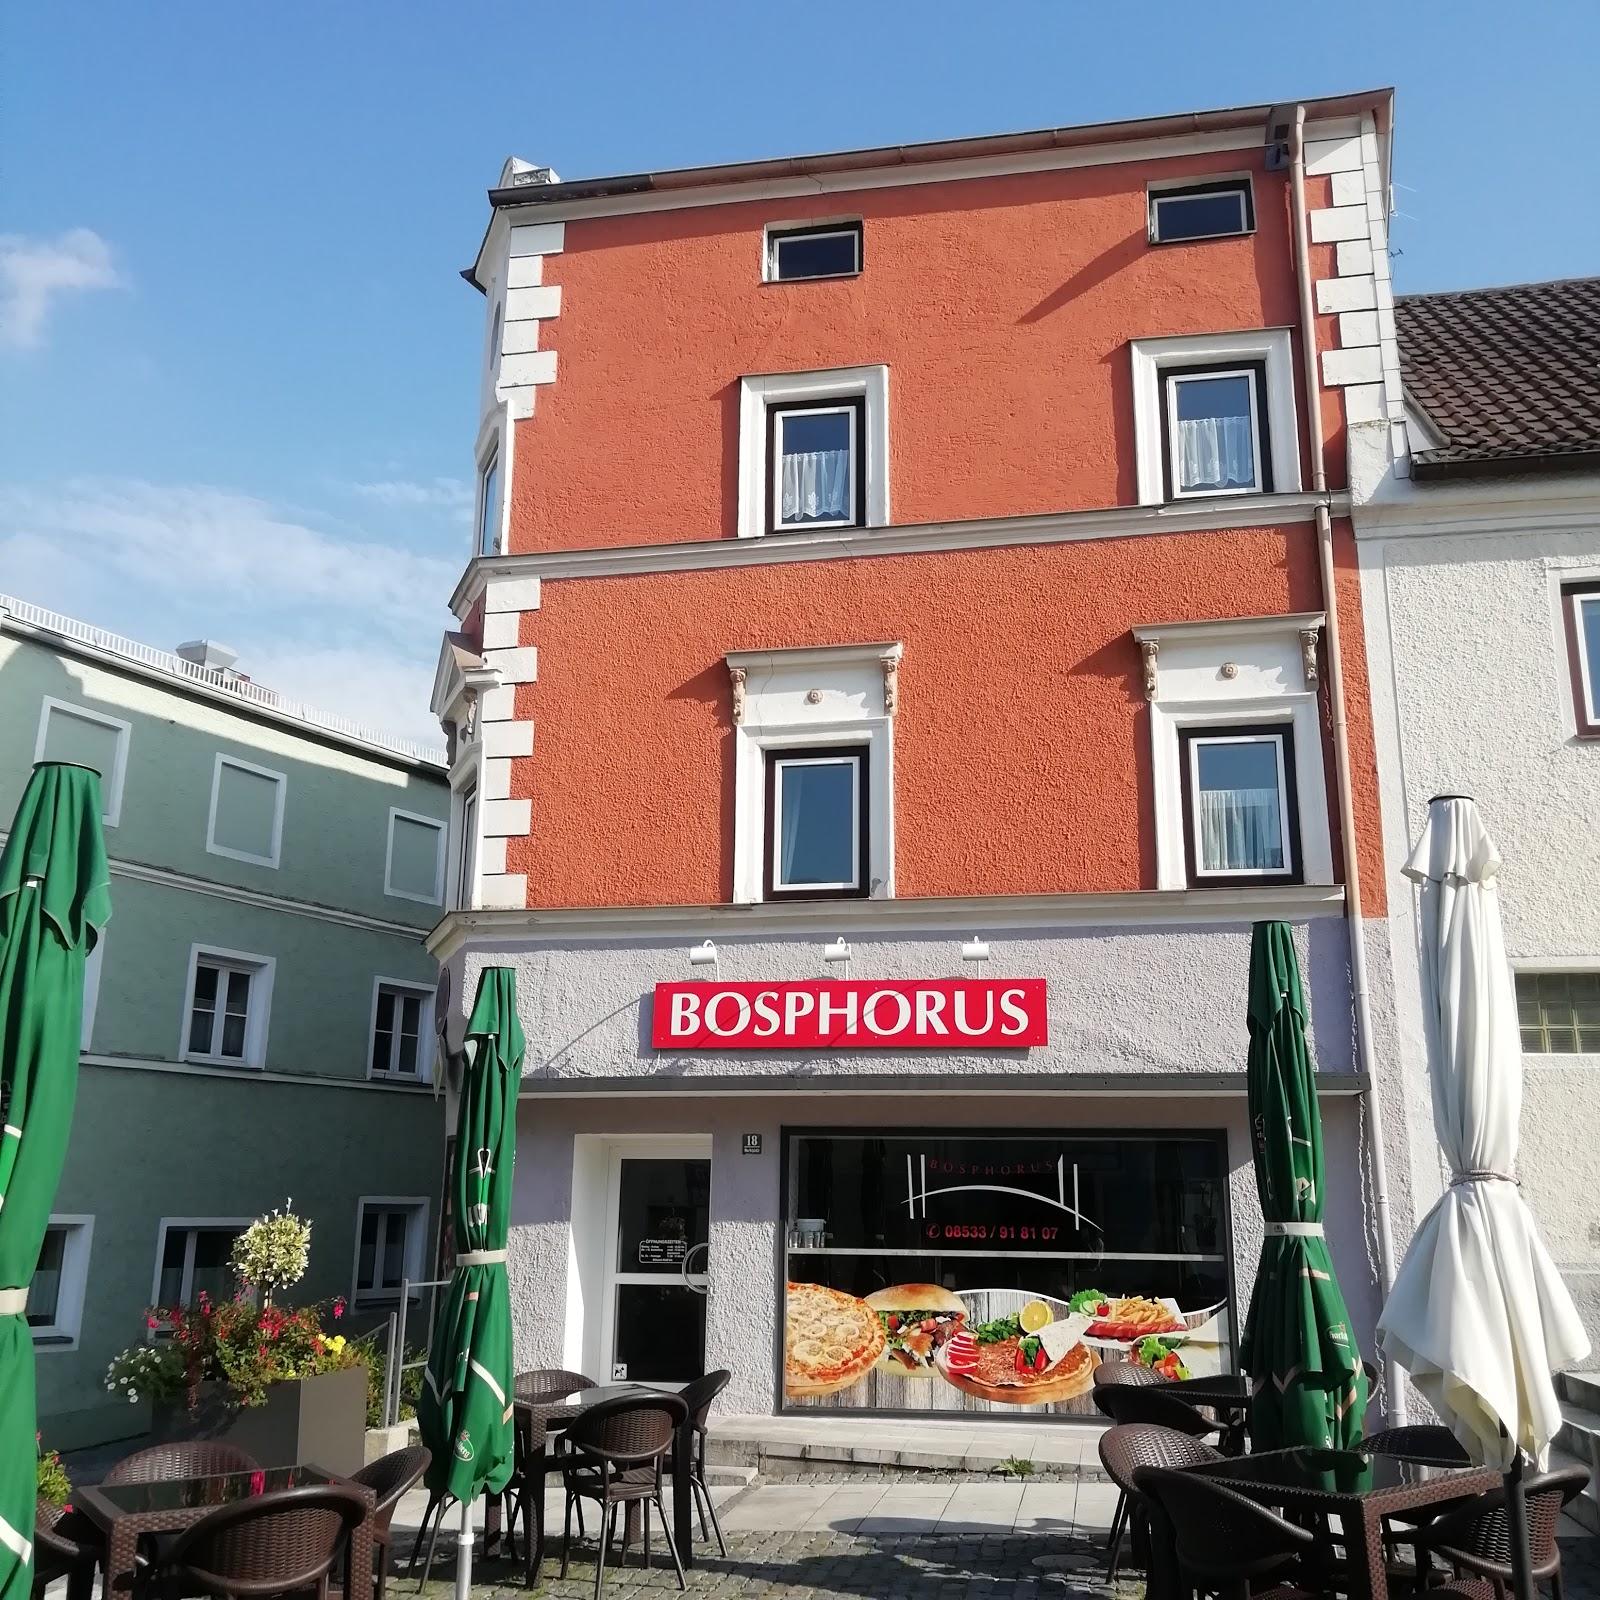 Restaurant "Bosphorus - Döner & Türkische Spezialitäten" in  Rotthalmünster